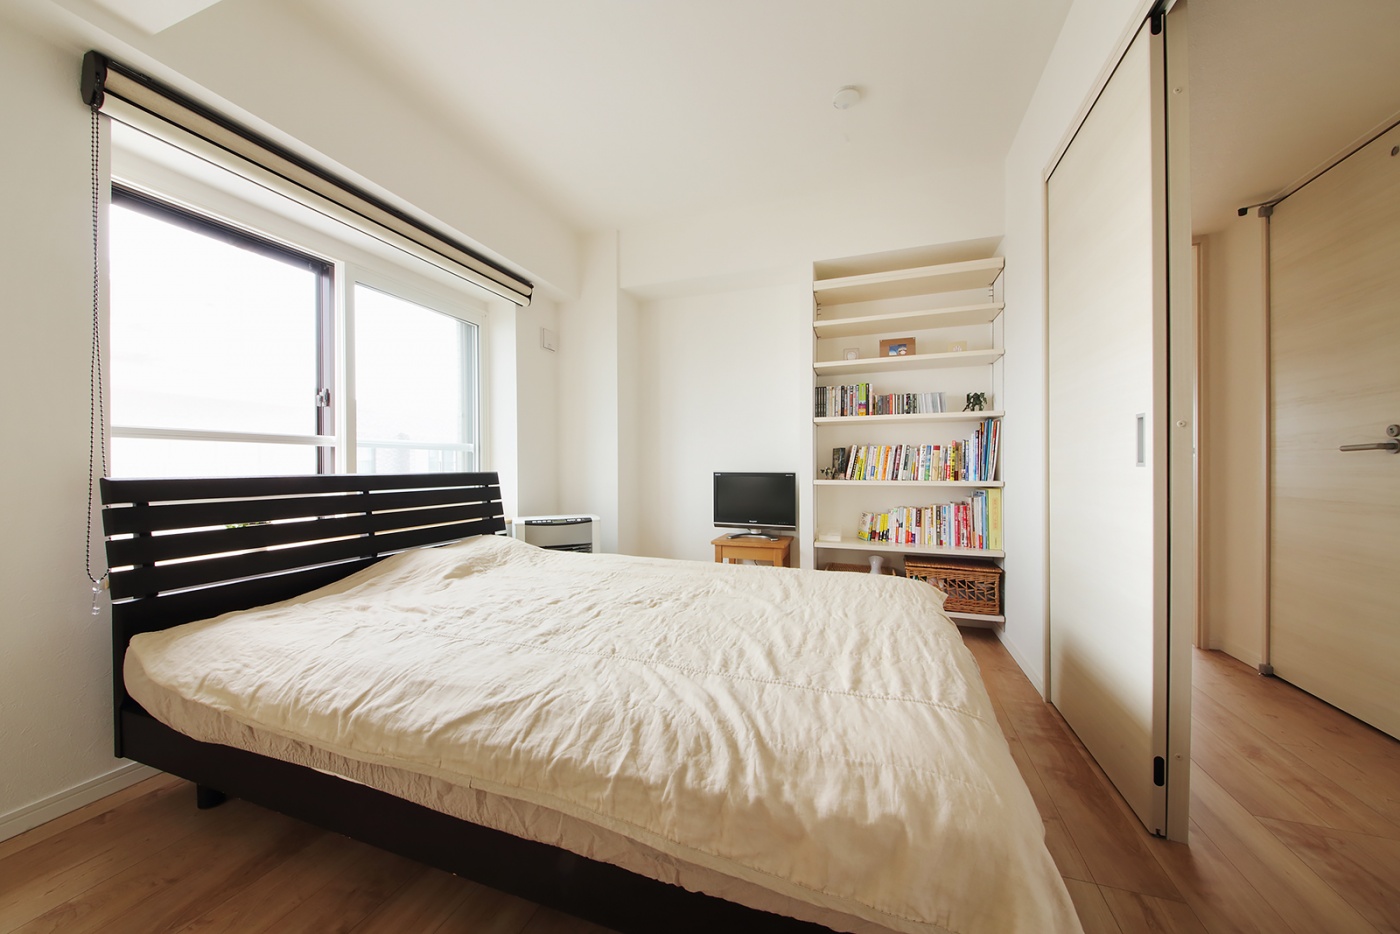 シンプルな造りの寝室は必要最低限のスペースで十分。構造的なくぼみを生かした収納スペースもたっぷりとれ機能的。